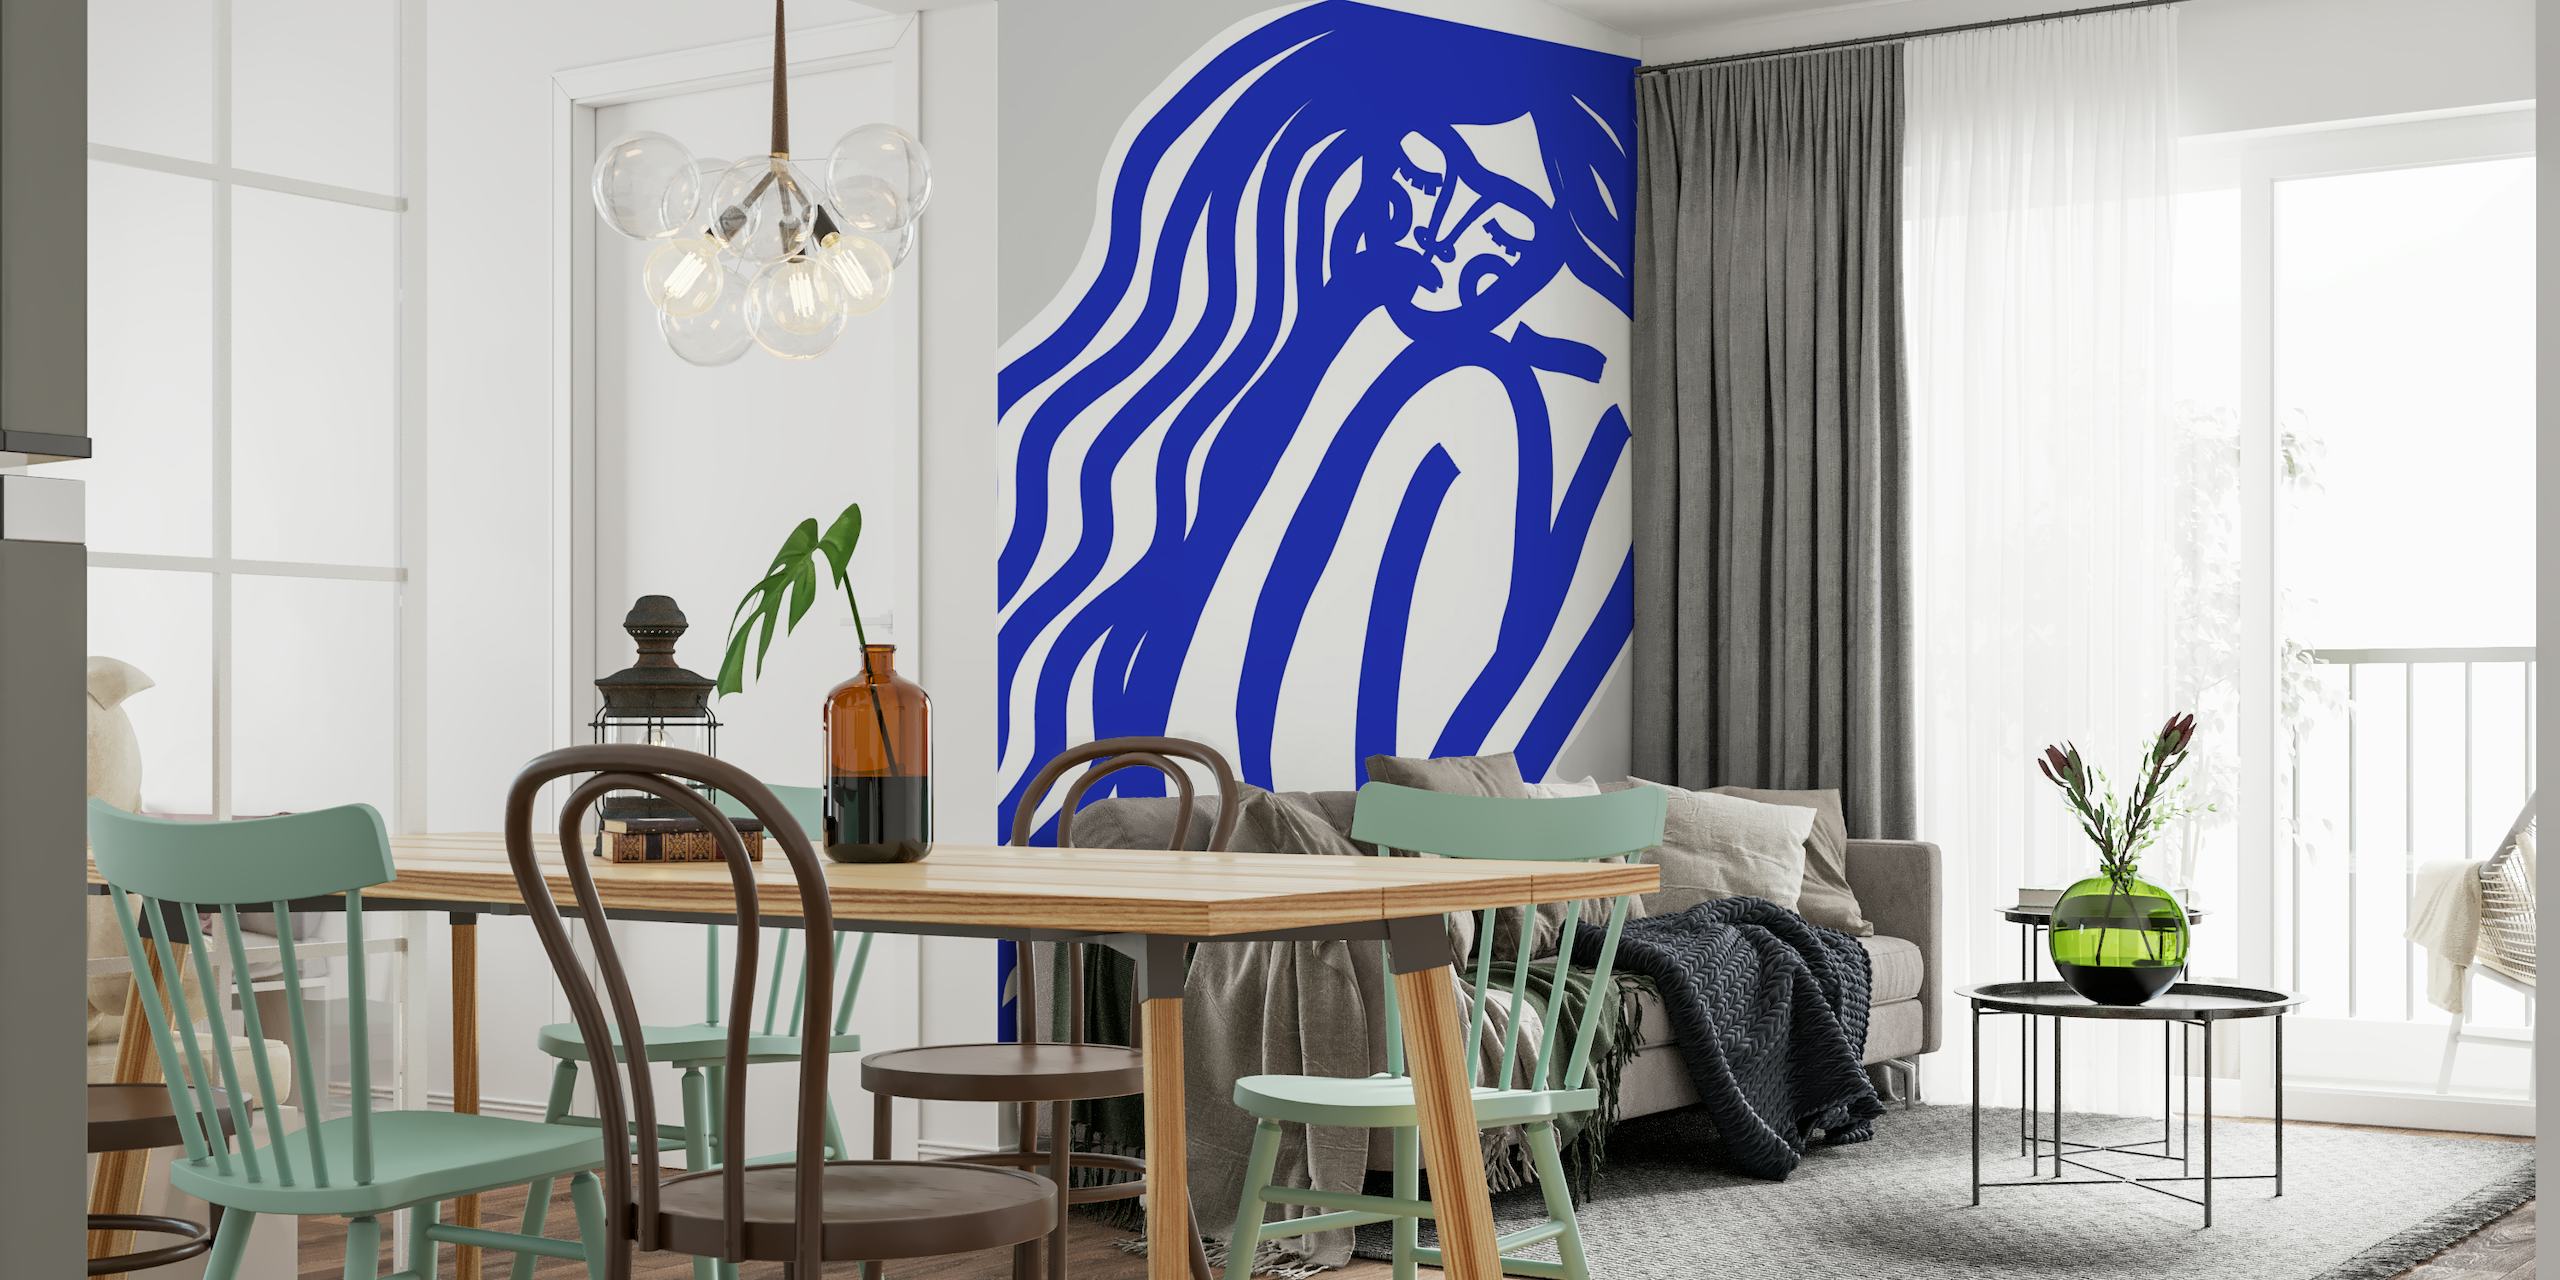 Apstraktni plavo-bijeli zidni mural s minimalističkim figurama